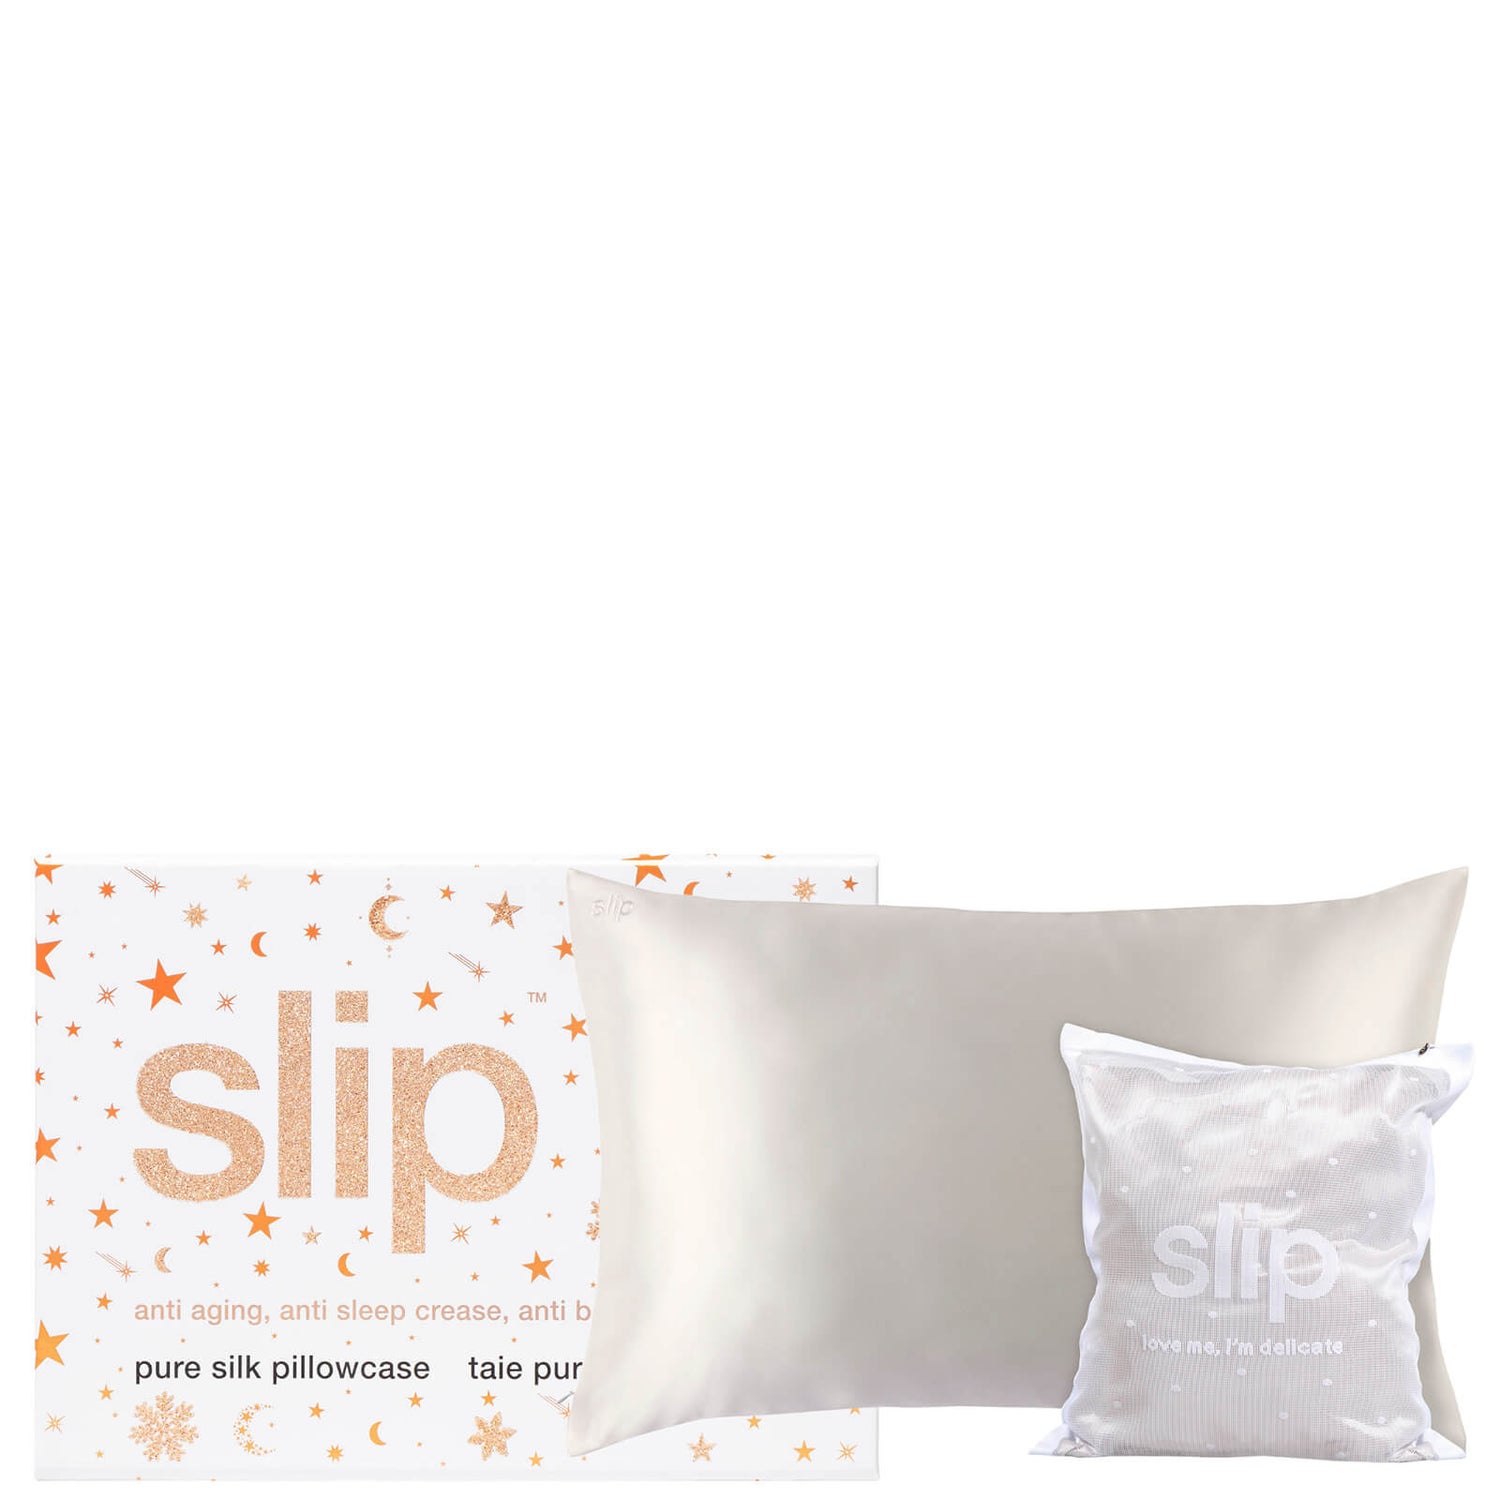 Slip Love Me I'm Delicate Gift Set - White